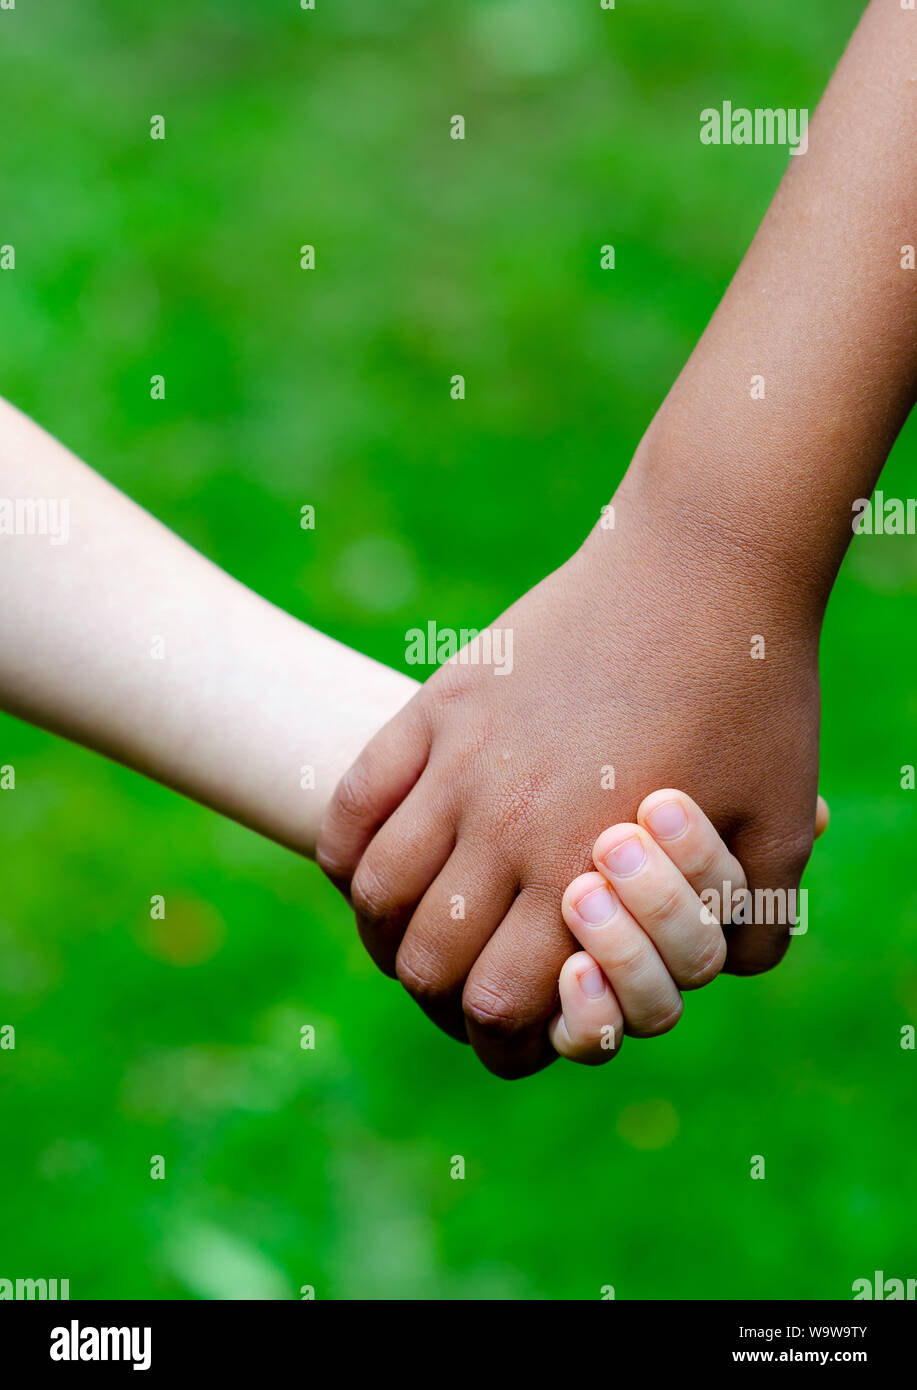 Garçon et fille de races différentes, tenez les mains ensemble. C'est garçon caucasien (blanc) et la fille est noir. Concept pour l'amitié, de paix, de soutien, de l'égalité. Banque D'Images